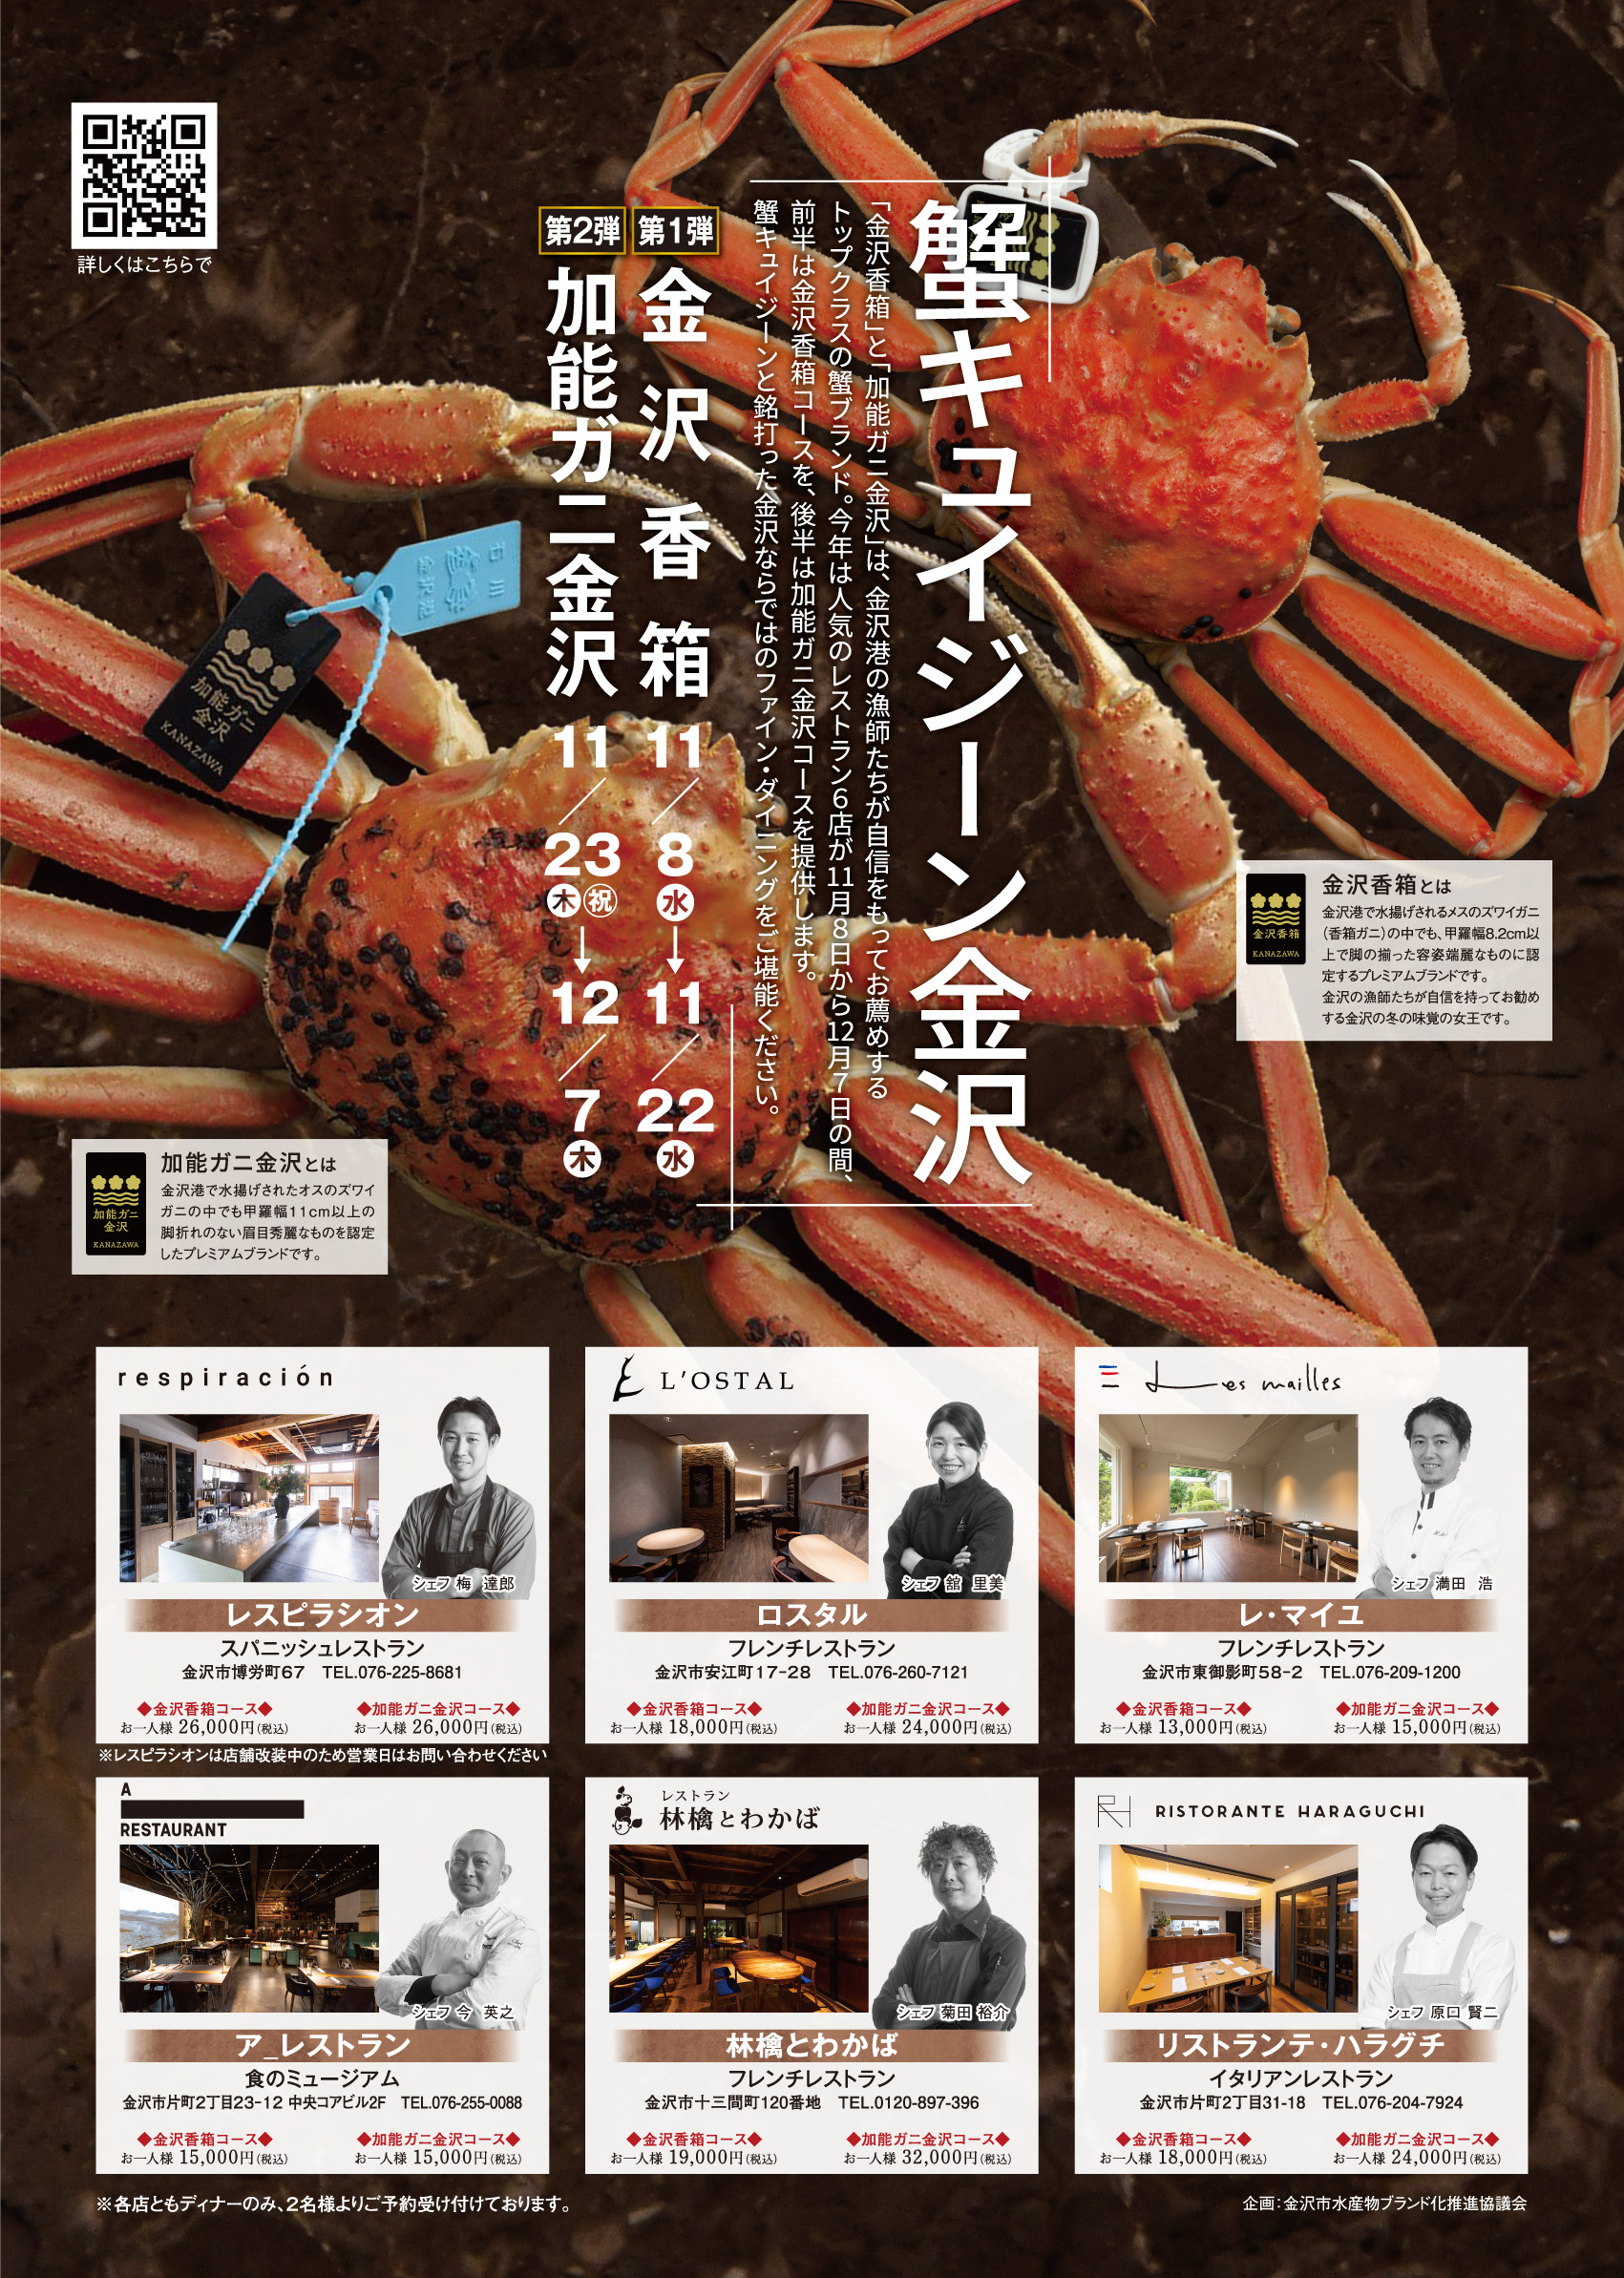 【11/8(水)〜12/7(木)】「蟹キュイジーン金沢」開催。金沢冬の味覚「金沢香箱」「加能ガニ金沢」を優雅なコース料理で堪能。[PR]